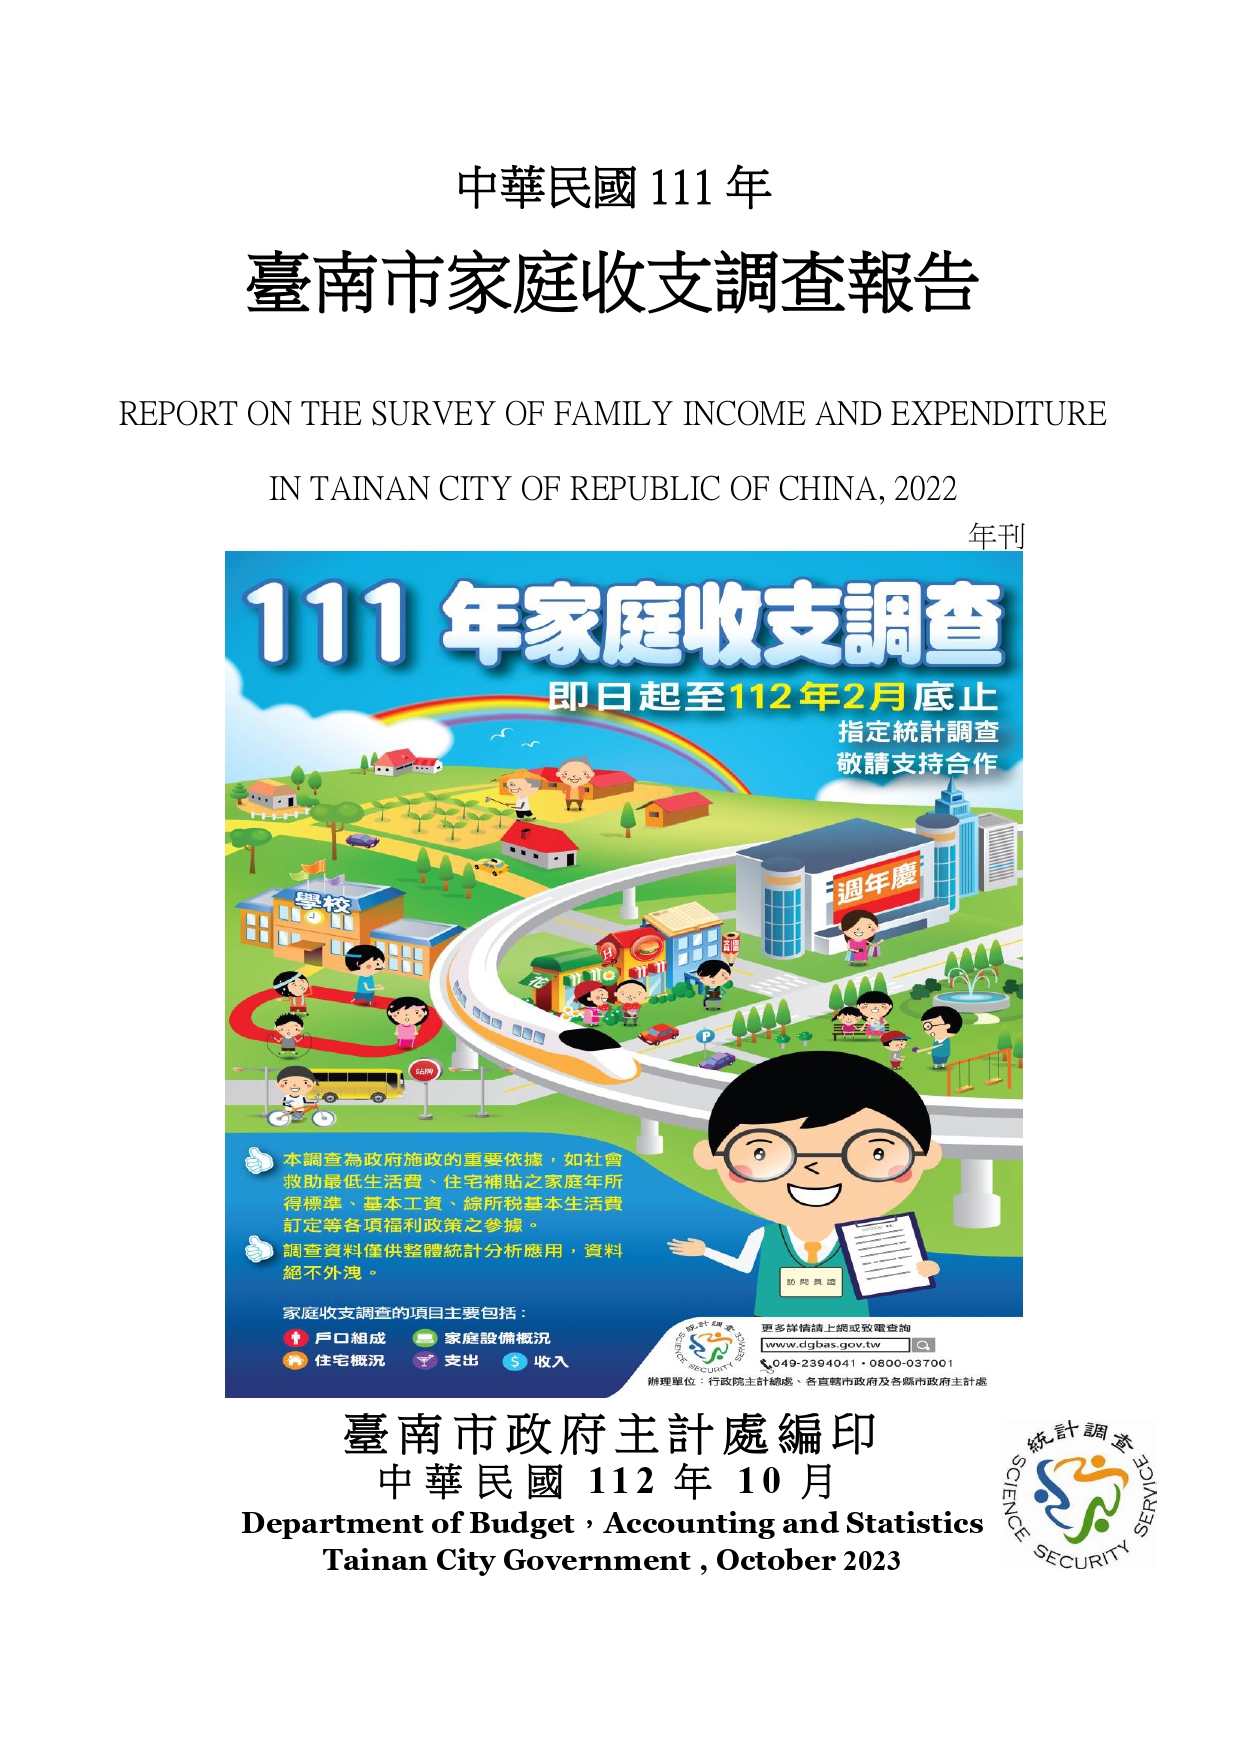 中華民國111年臺南市家庭收支調查報告 